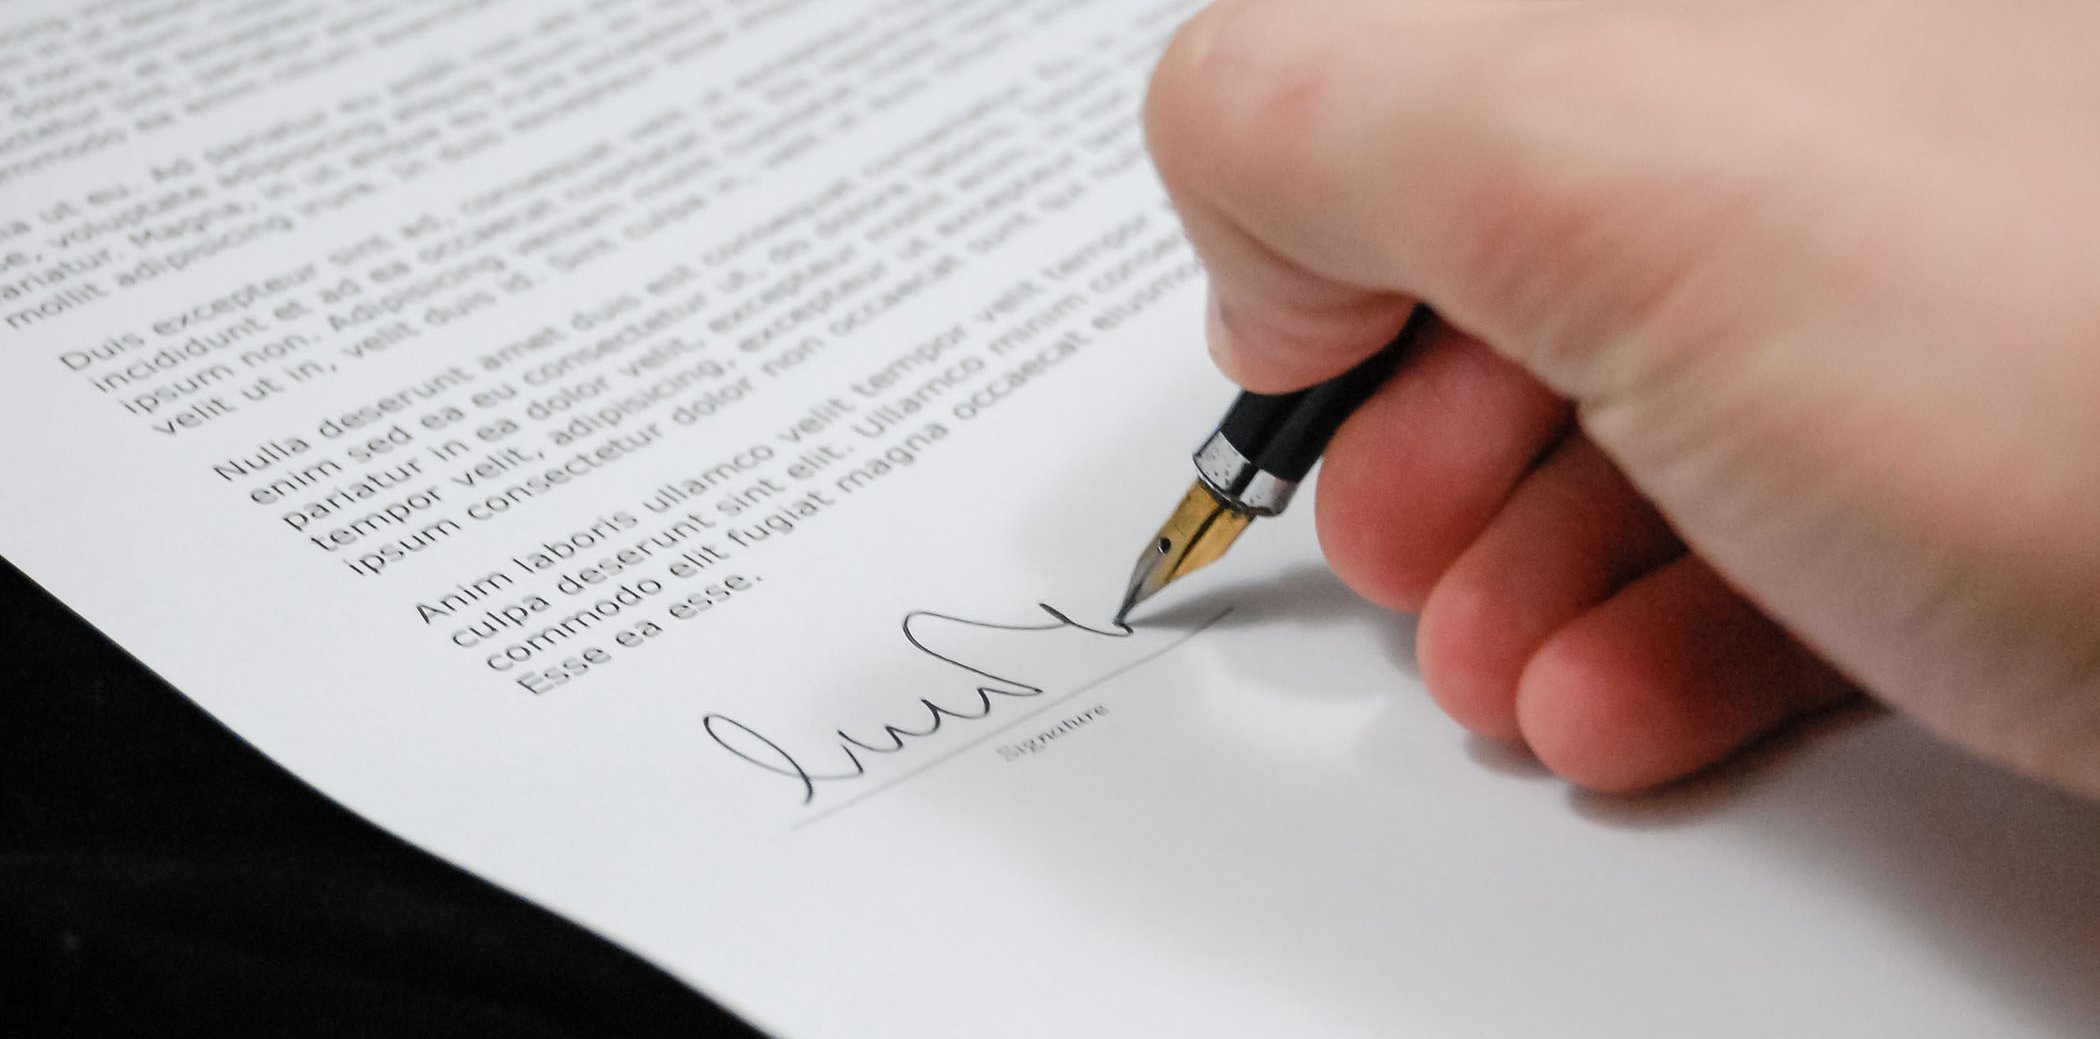 Una persona signant un document amb una ploma estilogràfica